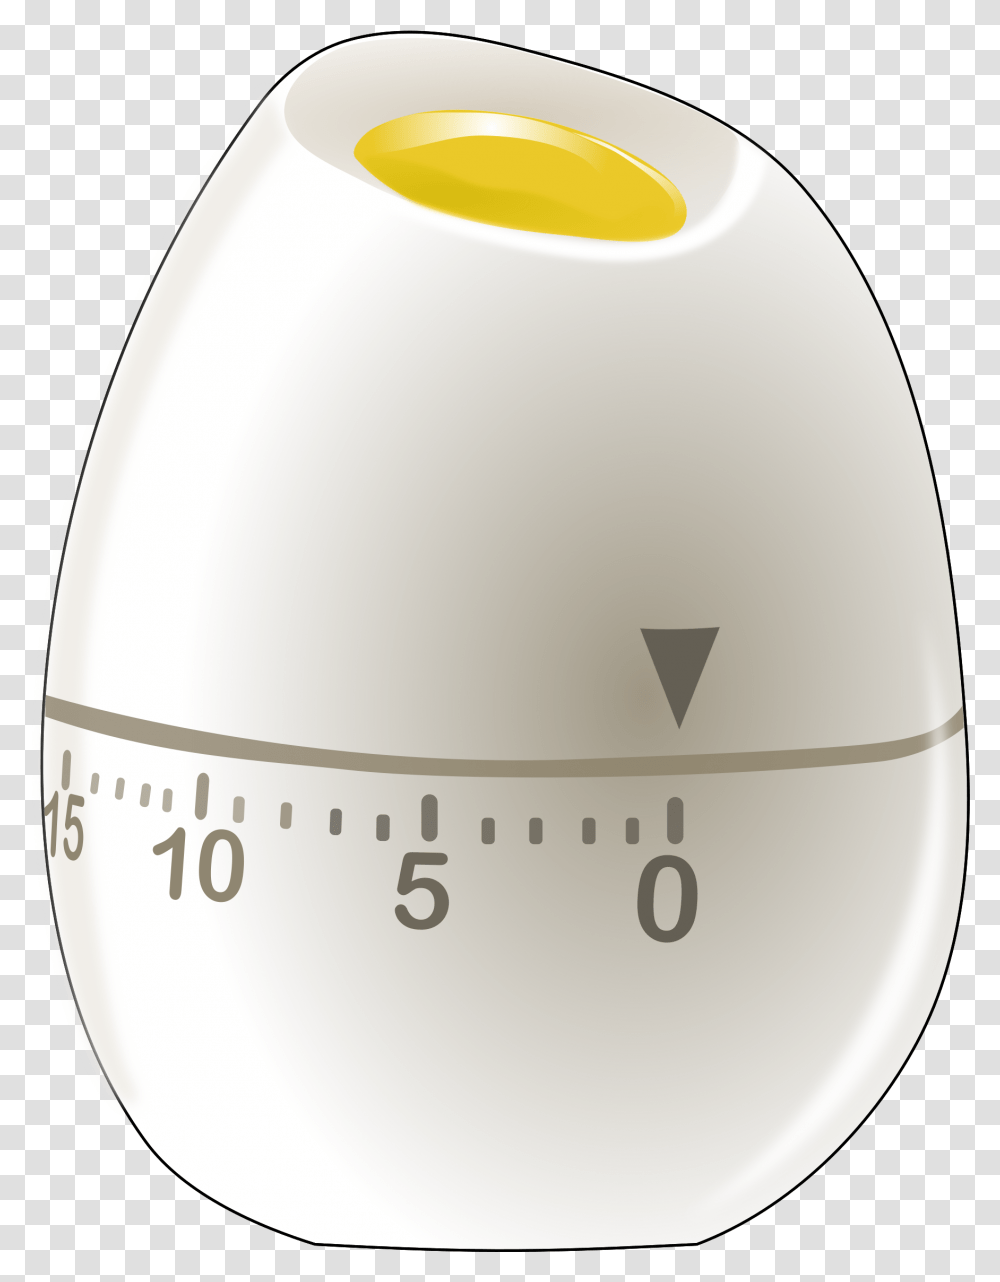 Angleclockalarm Clock Egg Timer, Food, Diagram, Label Transparent Png